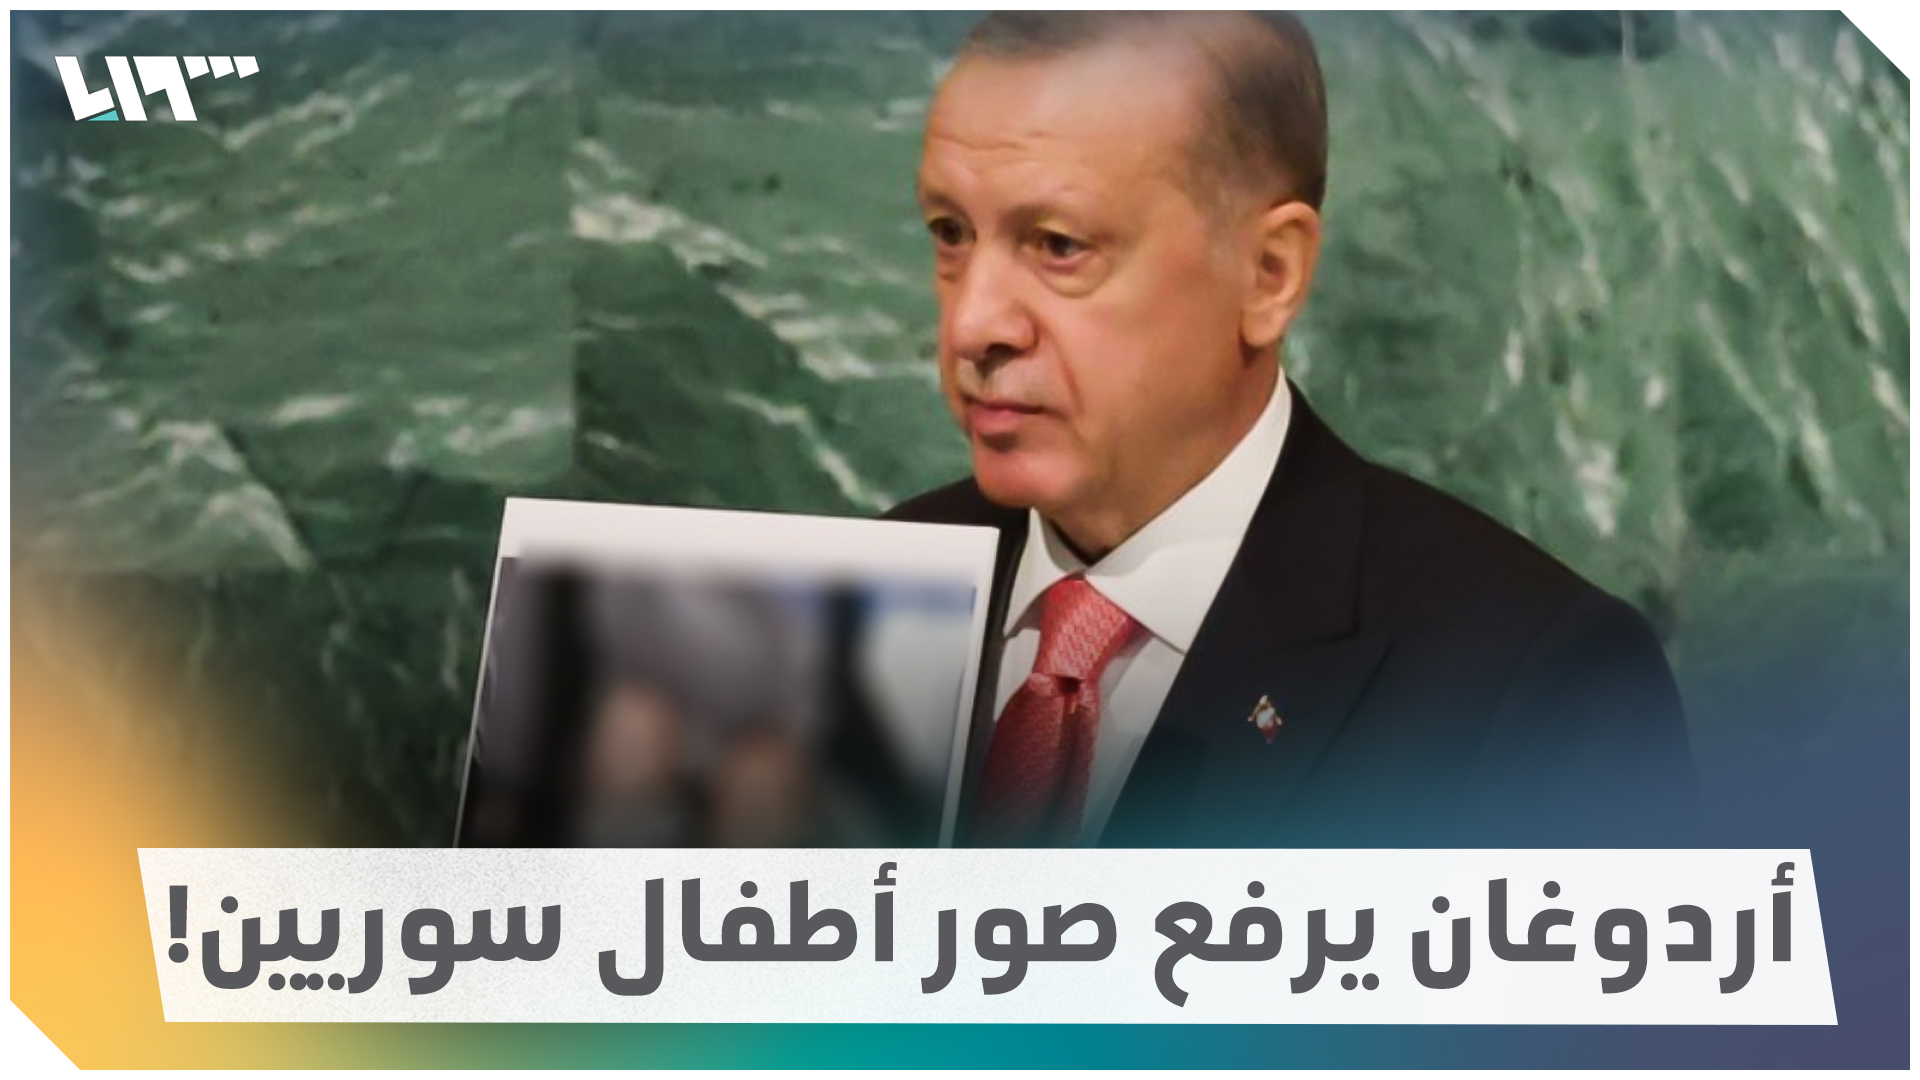 أردوغان يكشف شروط "العودة الطوعية" للسوريين إلى بلادهم بأمان وكرامة